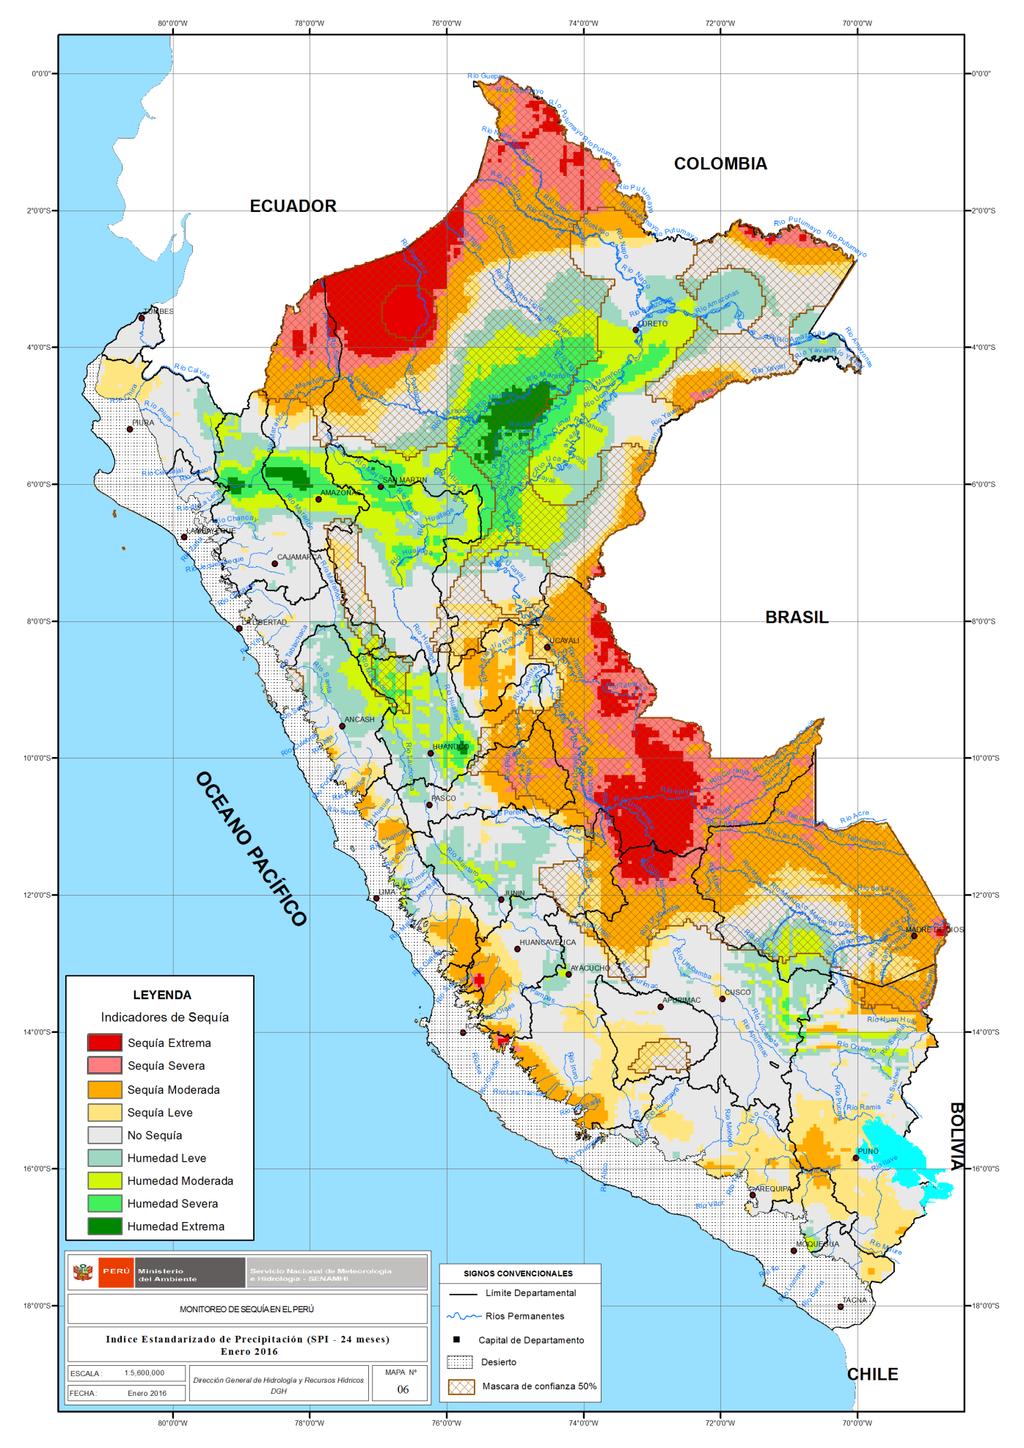 ÍNDICE ESTANDARIZADO DE PRECIPITACIÓN (SPI) El índice SPI-24 muestra sequía extrema de mayor área afectada en los departamentos de Ica (9.9%), Cusco (10.